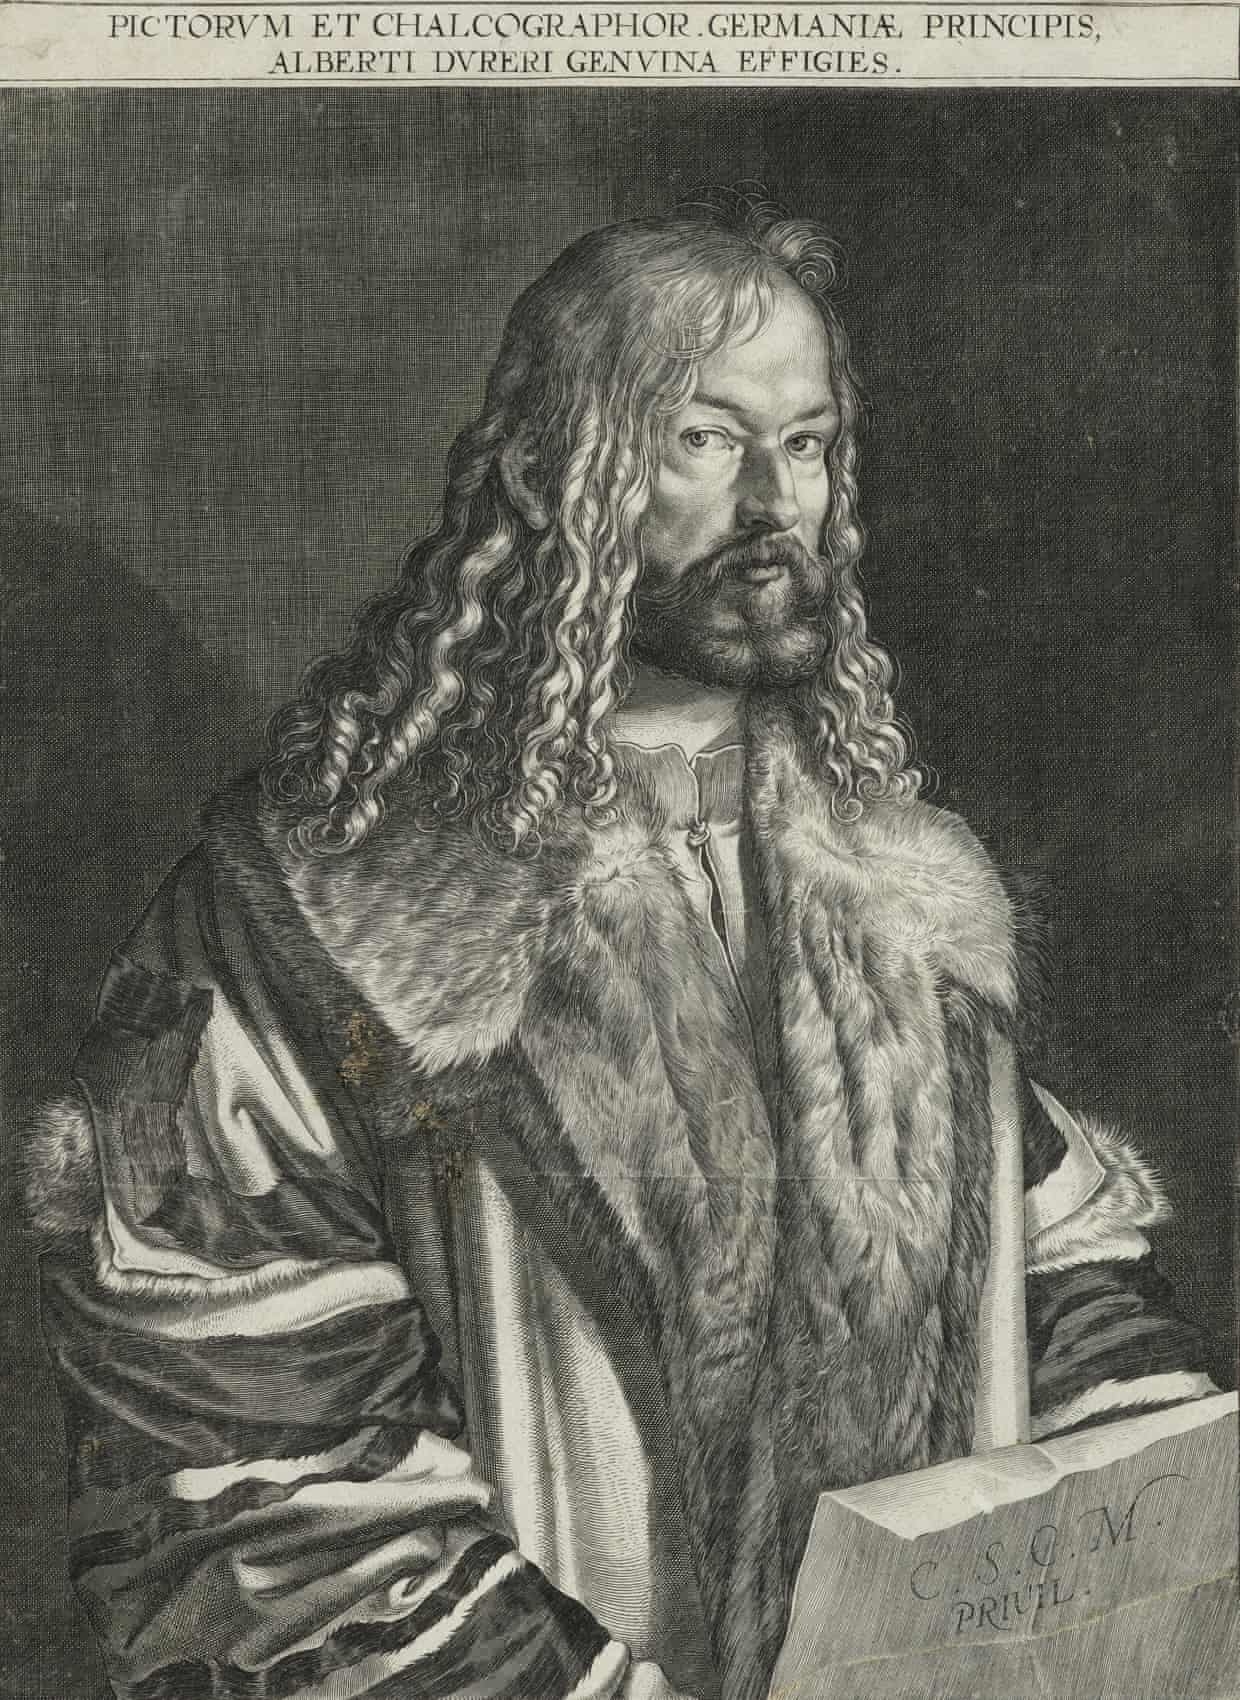 德国蚀刻版画家卢卡斯·基利安 (Lucas Kilian) 创作的丢勒肖像，1608 年。这是在丢勒去世80年后创作，体现了他不朽的名声。丢勒对新技术的理解使之得到了声誉，他不是第一个版画家，但却是第一个因此成名的人。